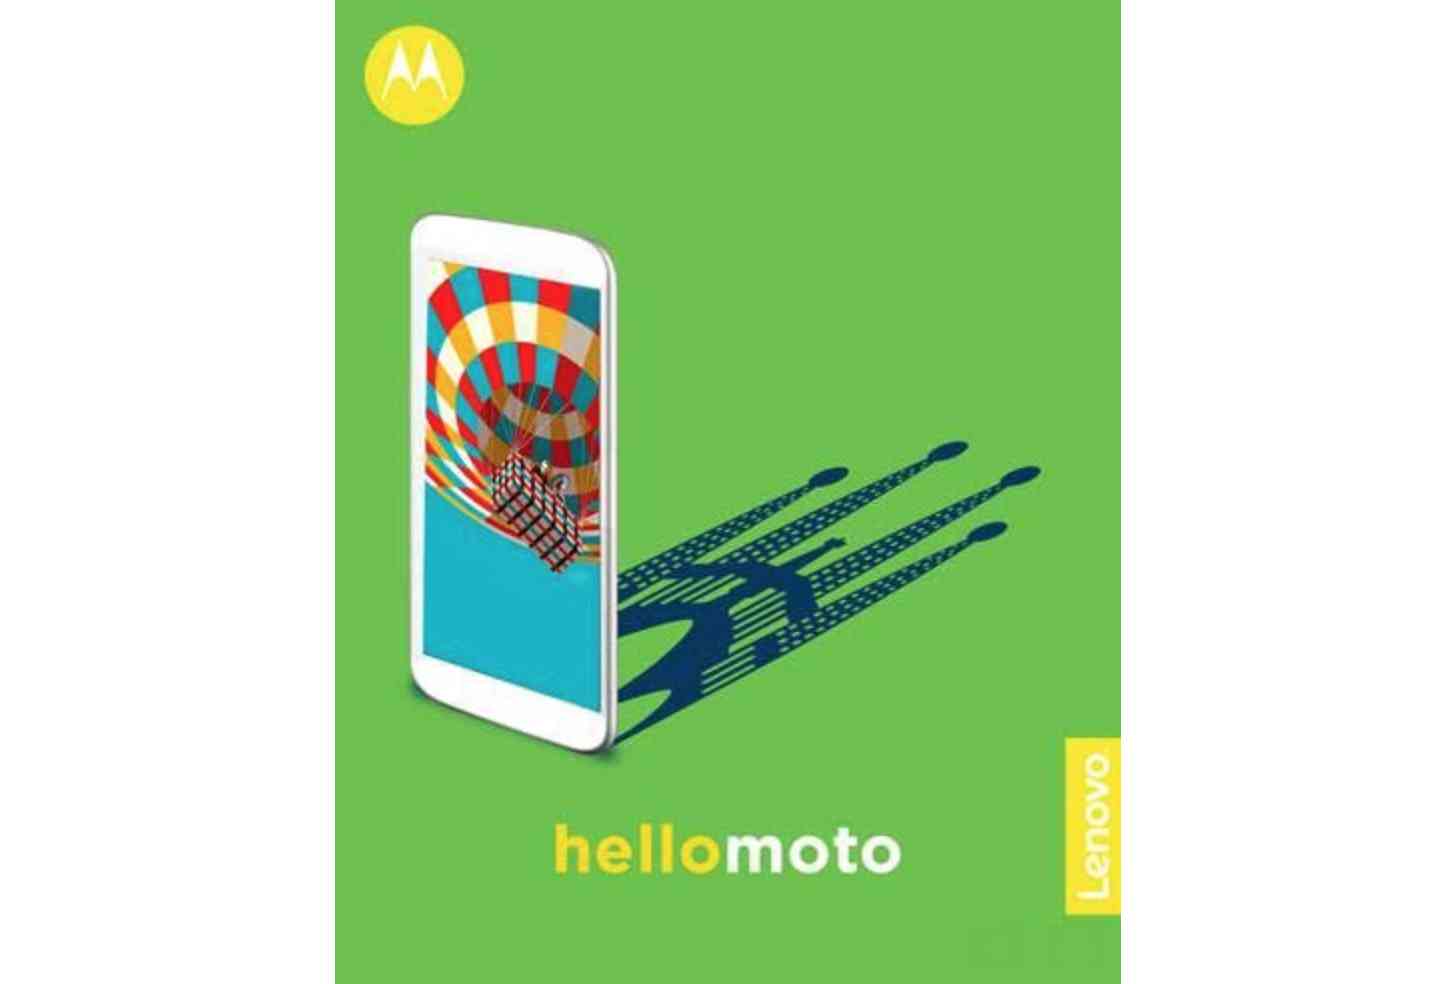 Moto MWC 2017 invitation